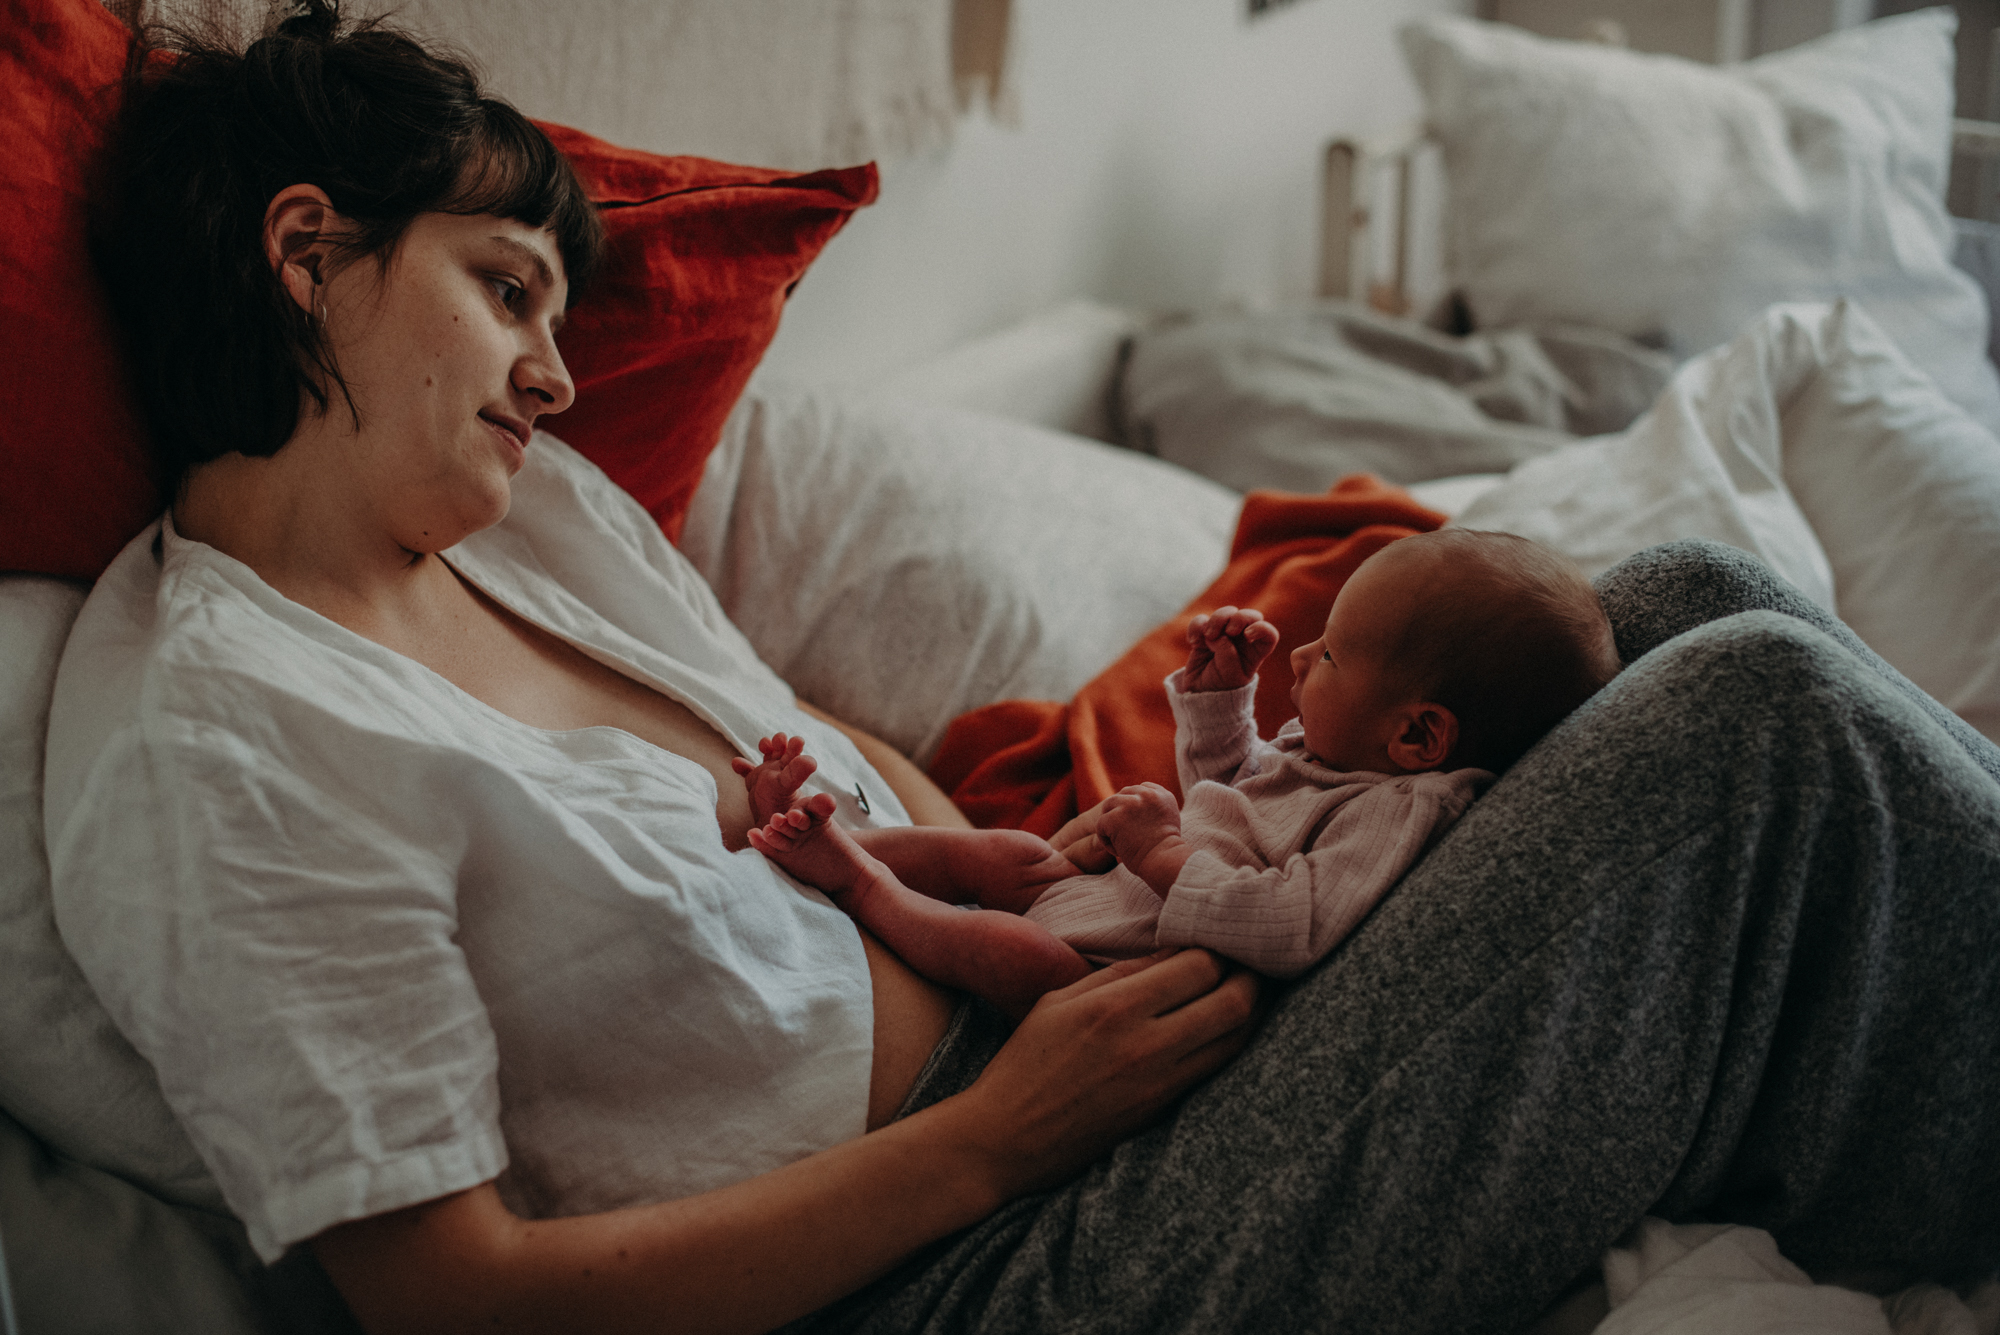 Mutter mit Neugeborenen im Wochenbett, Blogpost Babyfotoshooting selber machen, fotograf in basel